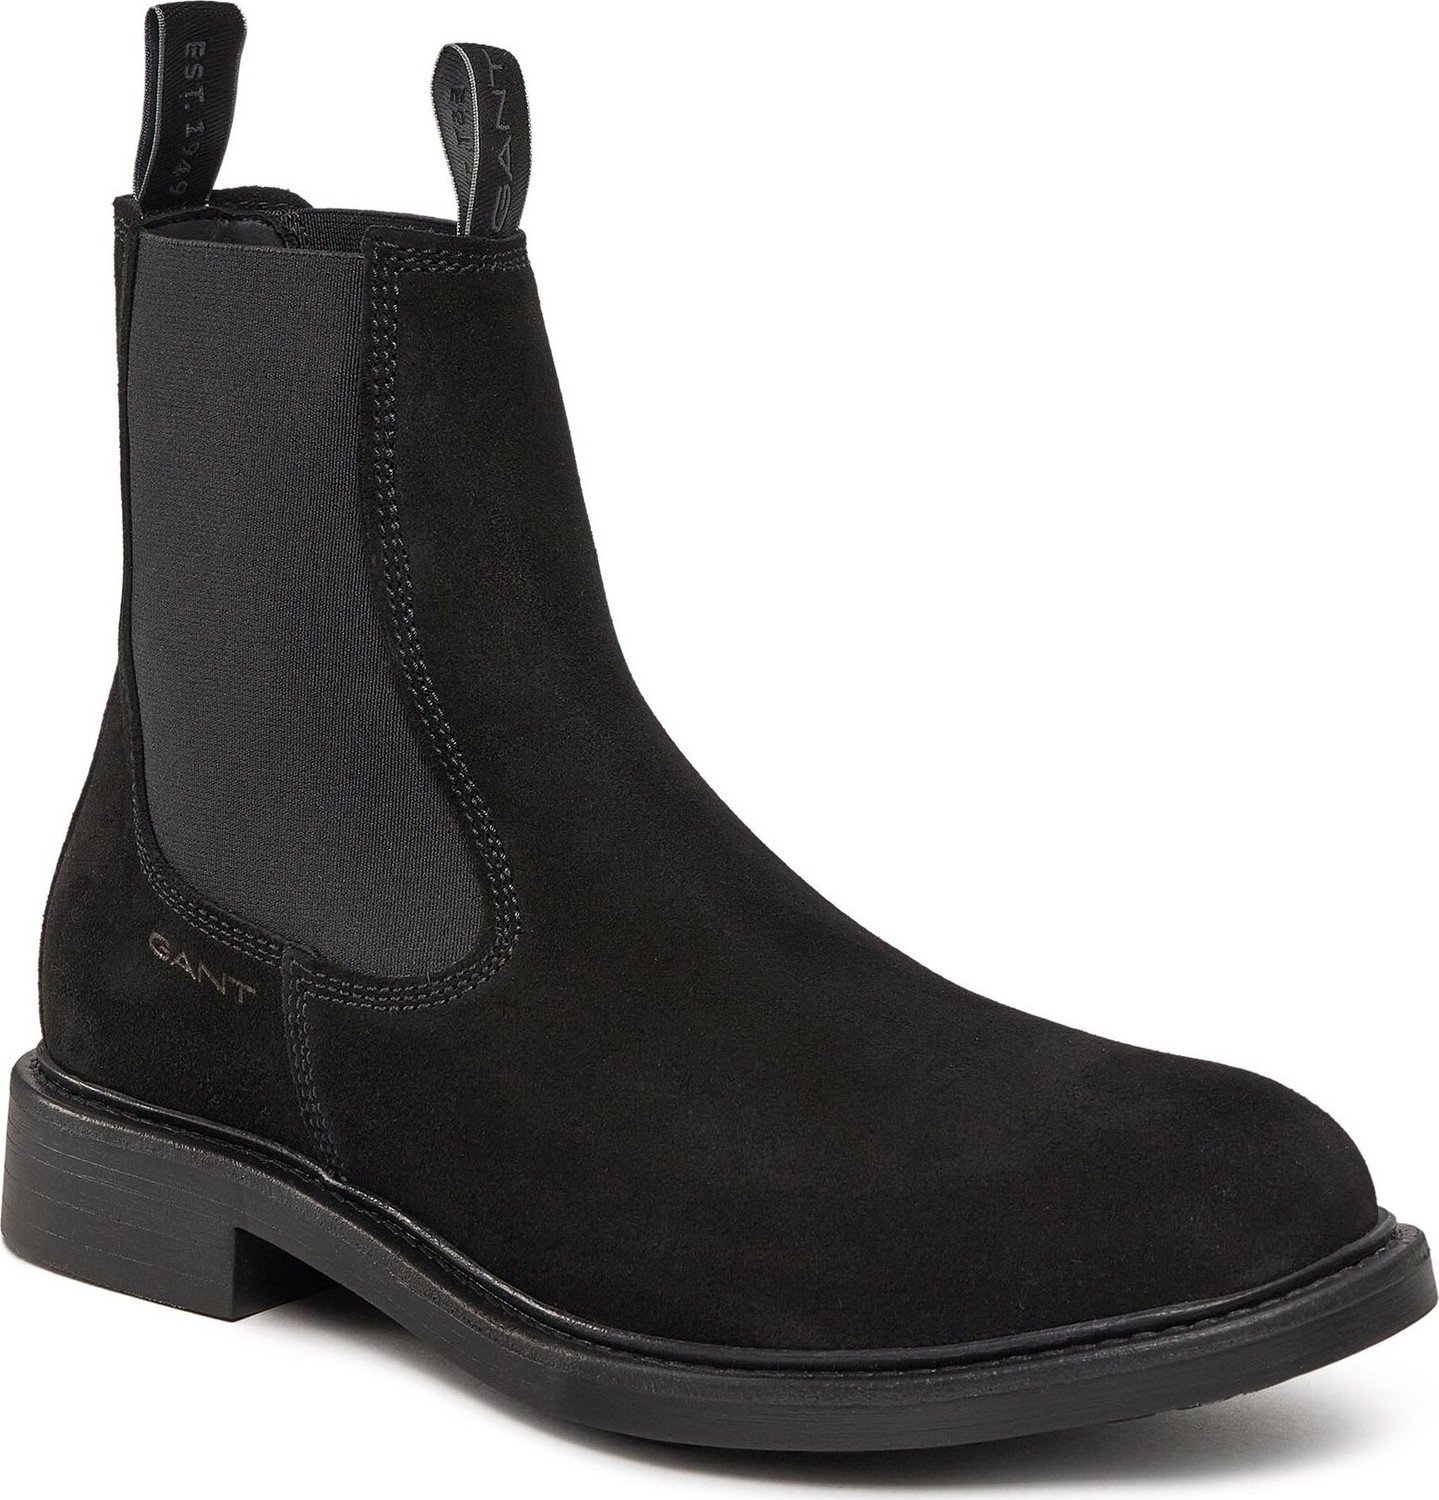 Kotníková obuv s elastickým prvkem Gant Millbro Chelsea Boot 27633415 Black